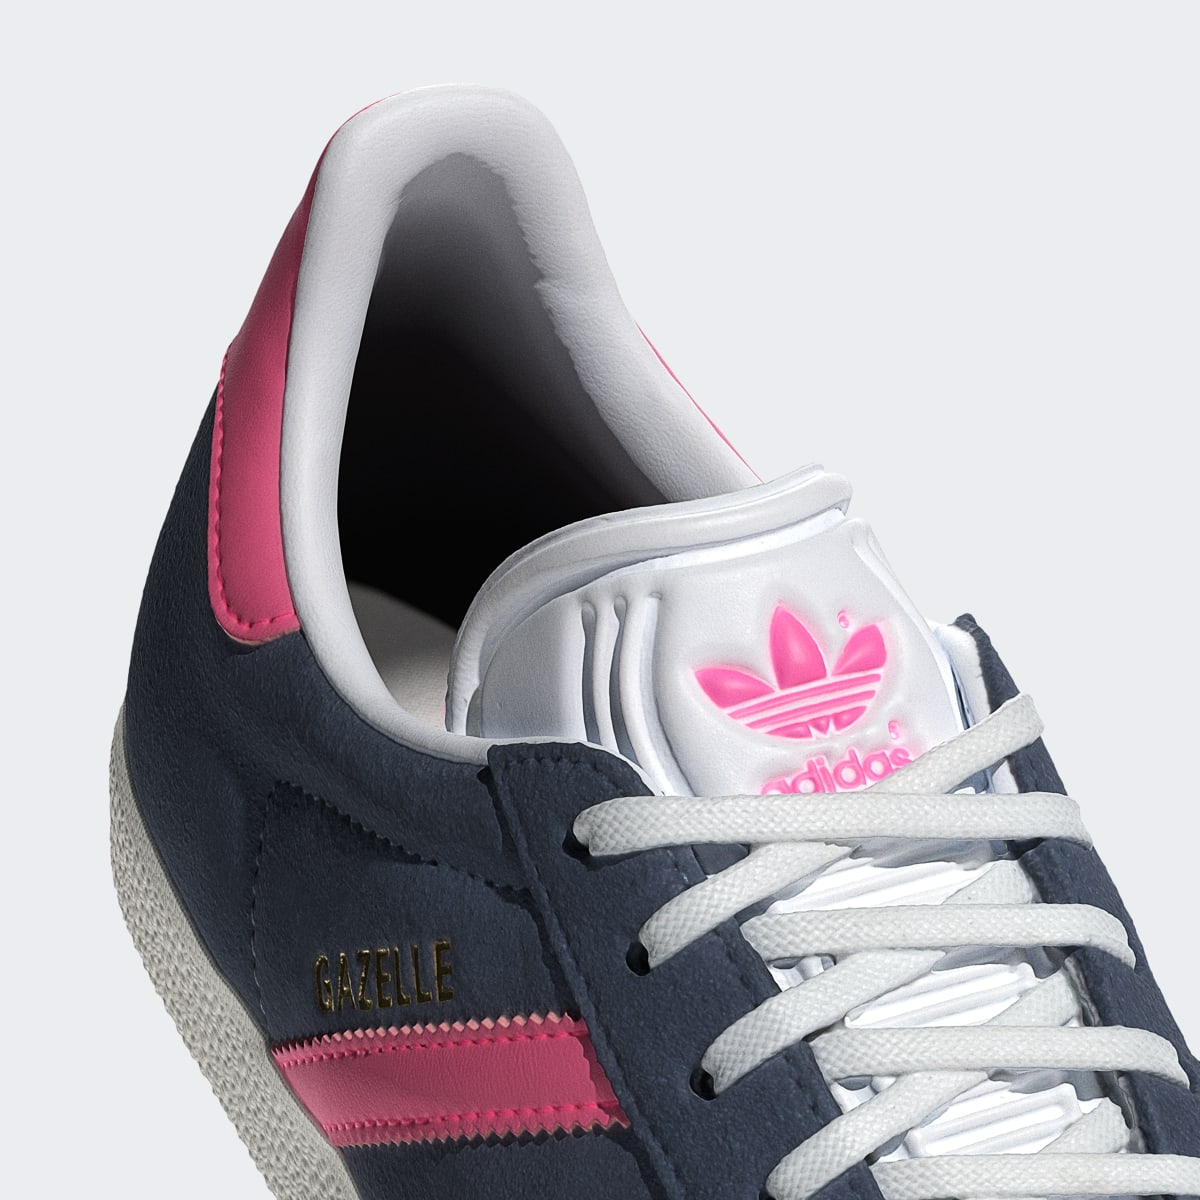 Adidas Gazelle Shoes. 9